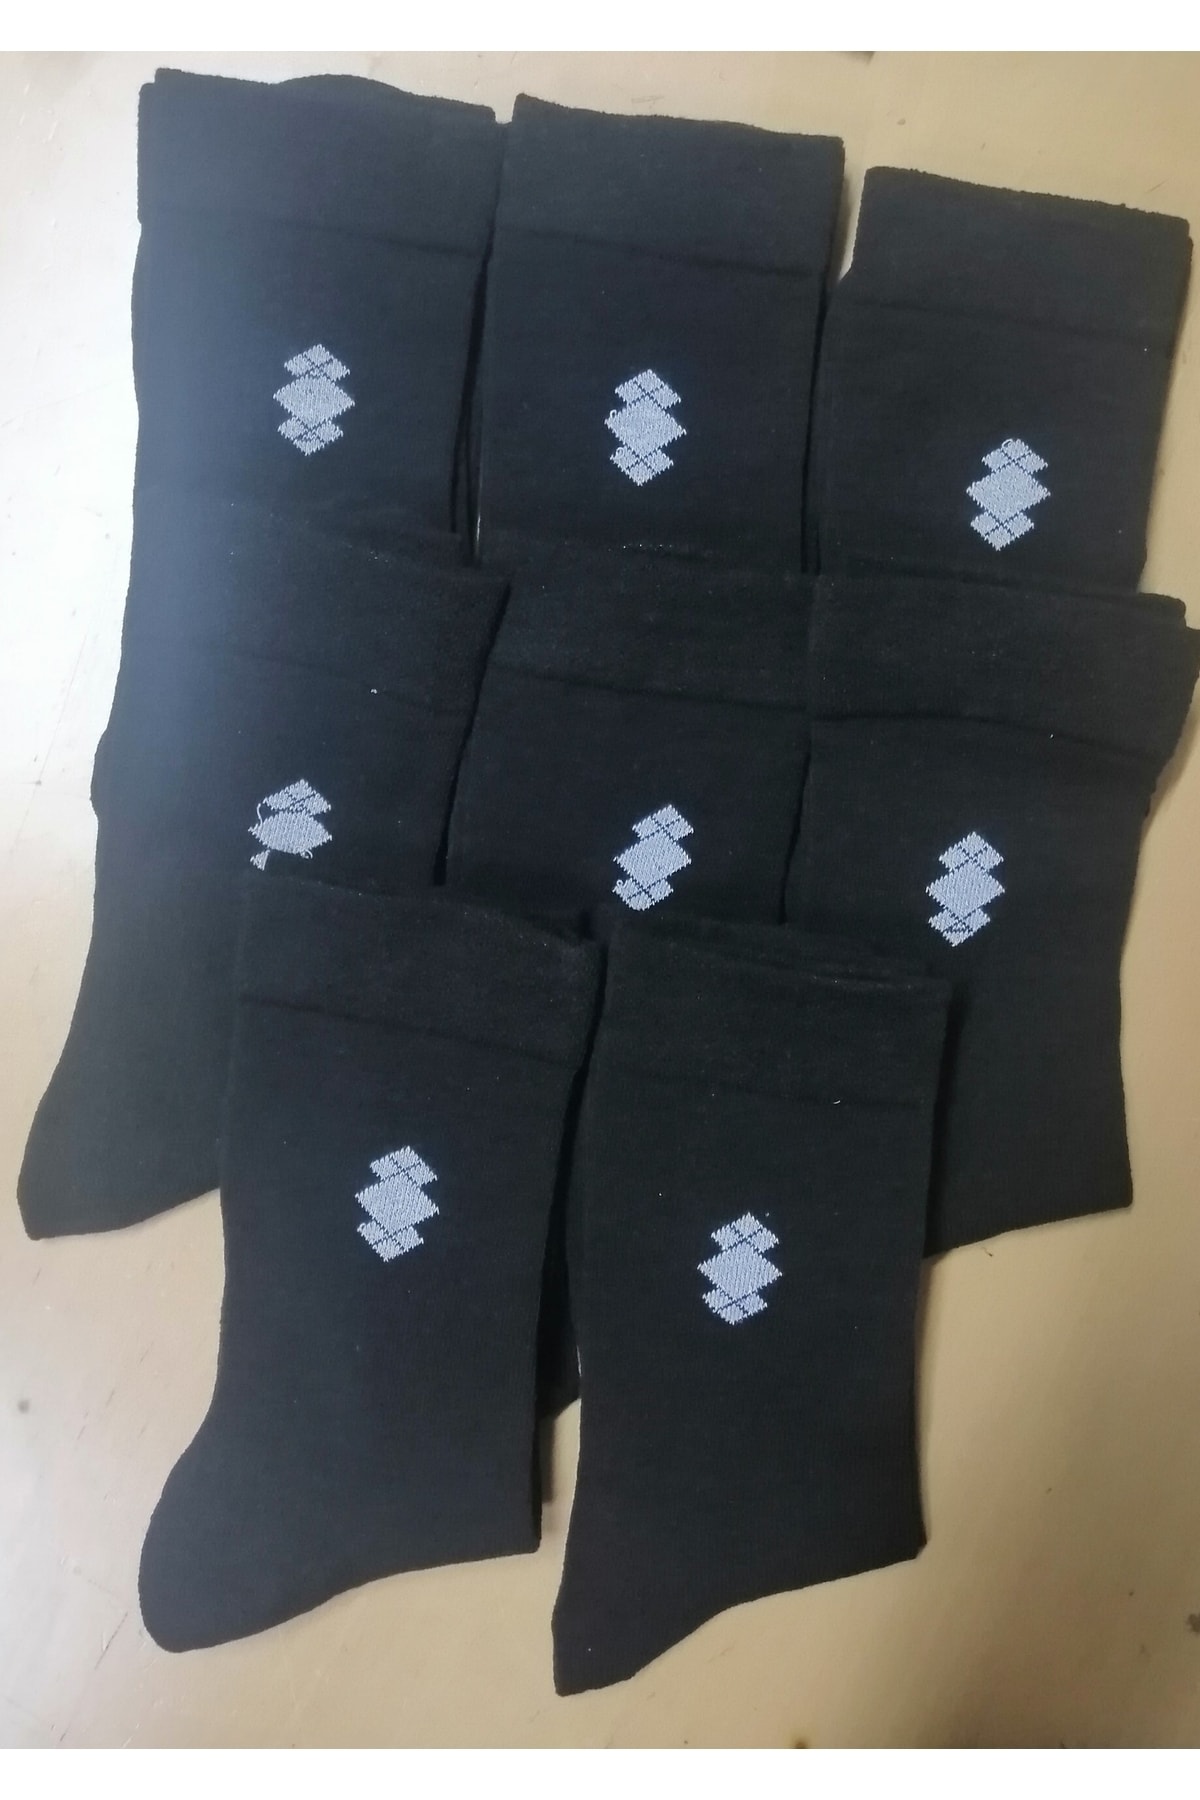 BennSi Erkek 10 Çift Siyah Renk Likralı Cotton Çorap